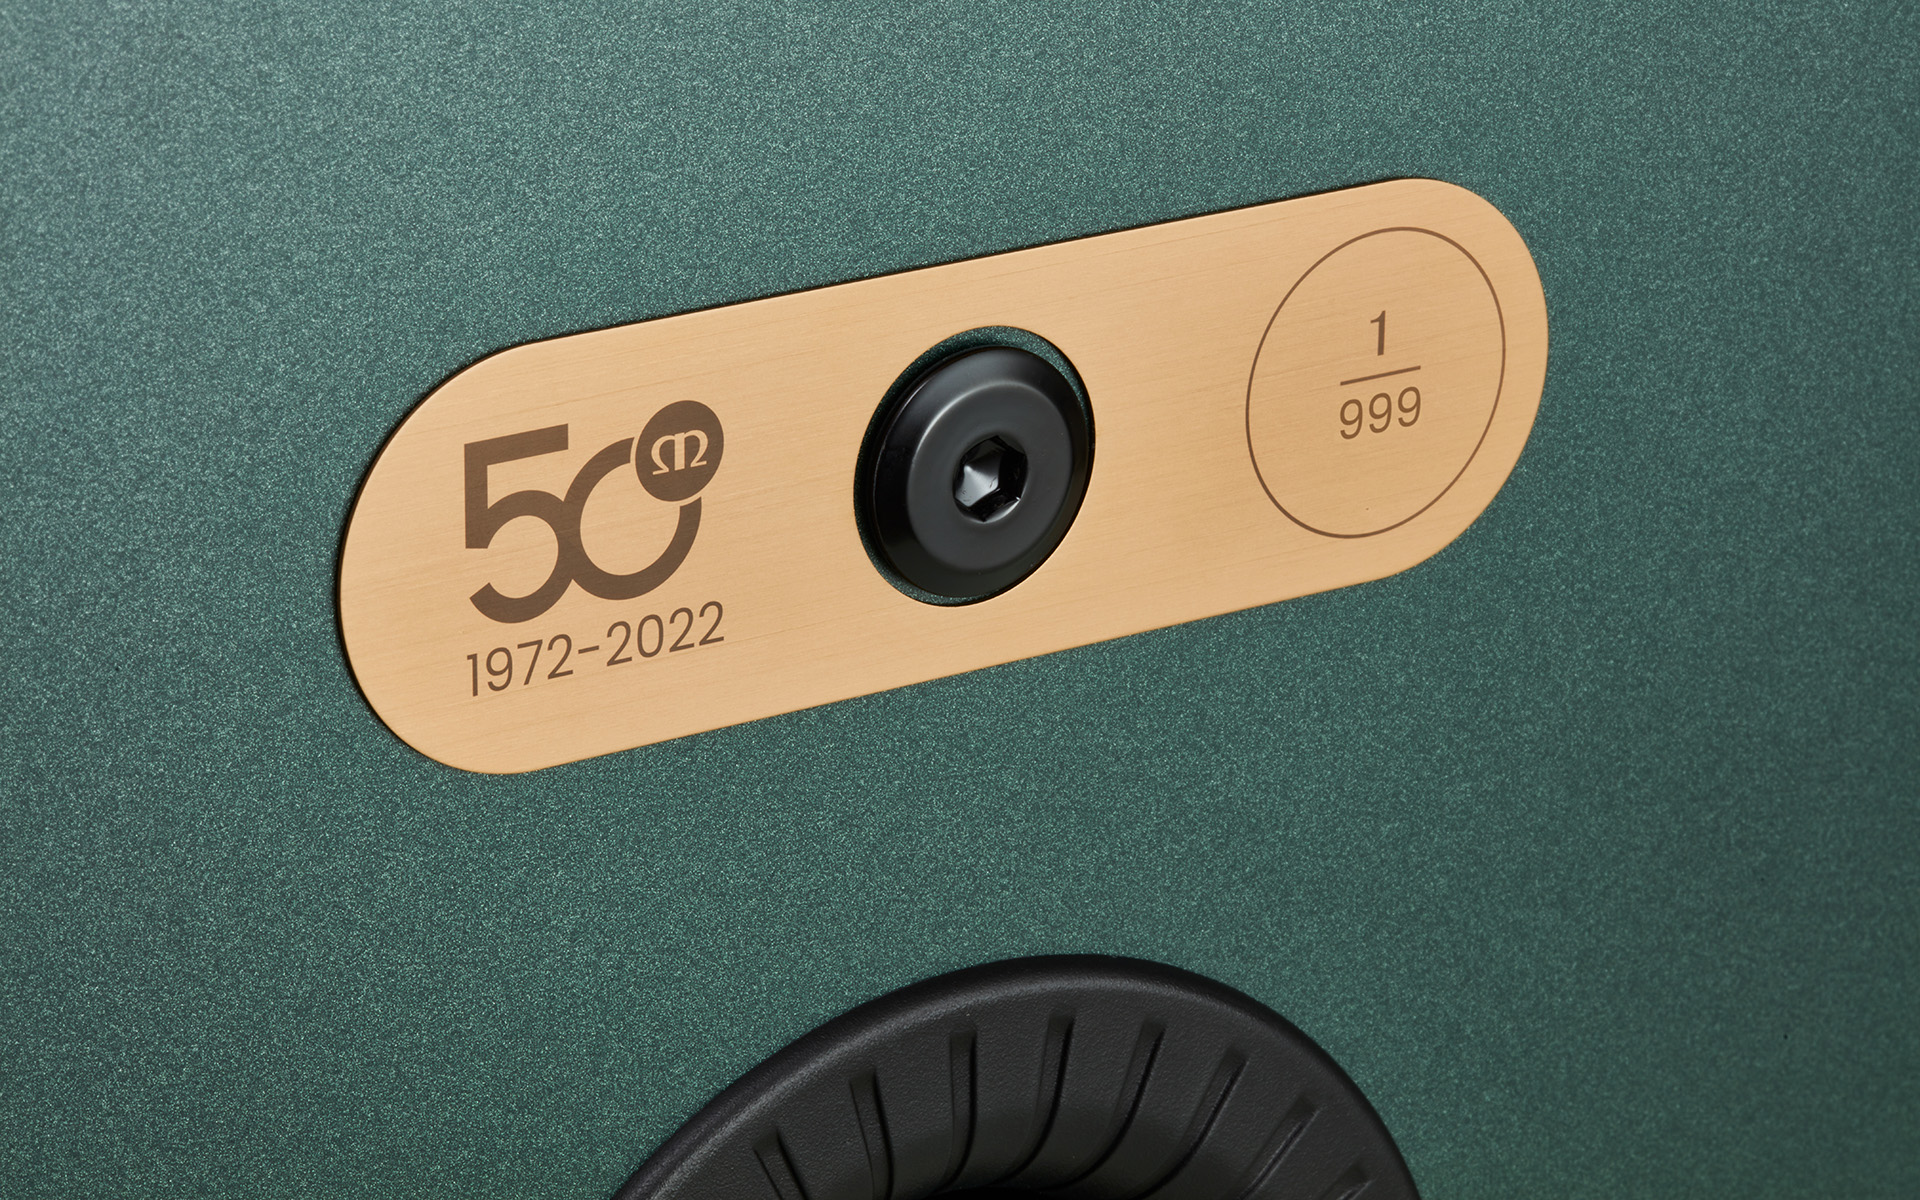 К 50-летнему юбилею Monitor Audio выпускает Silver 100 Limited Edition